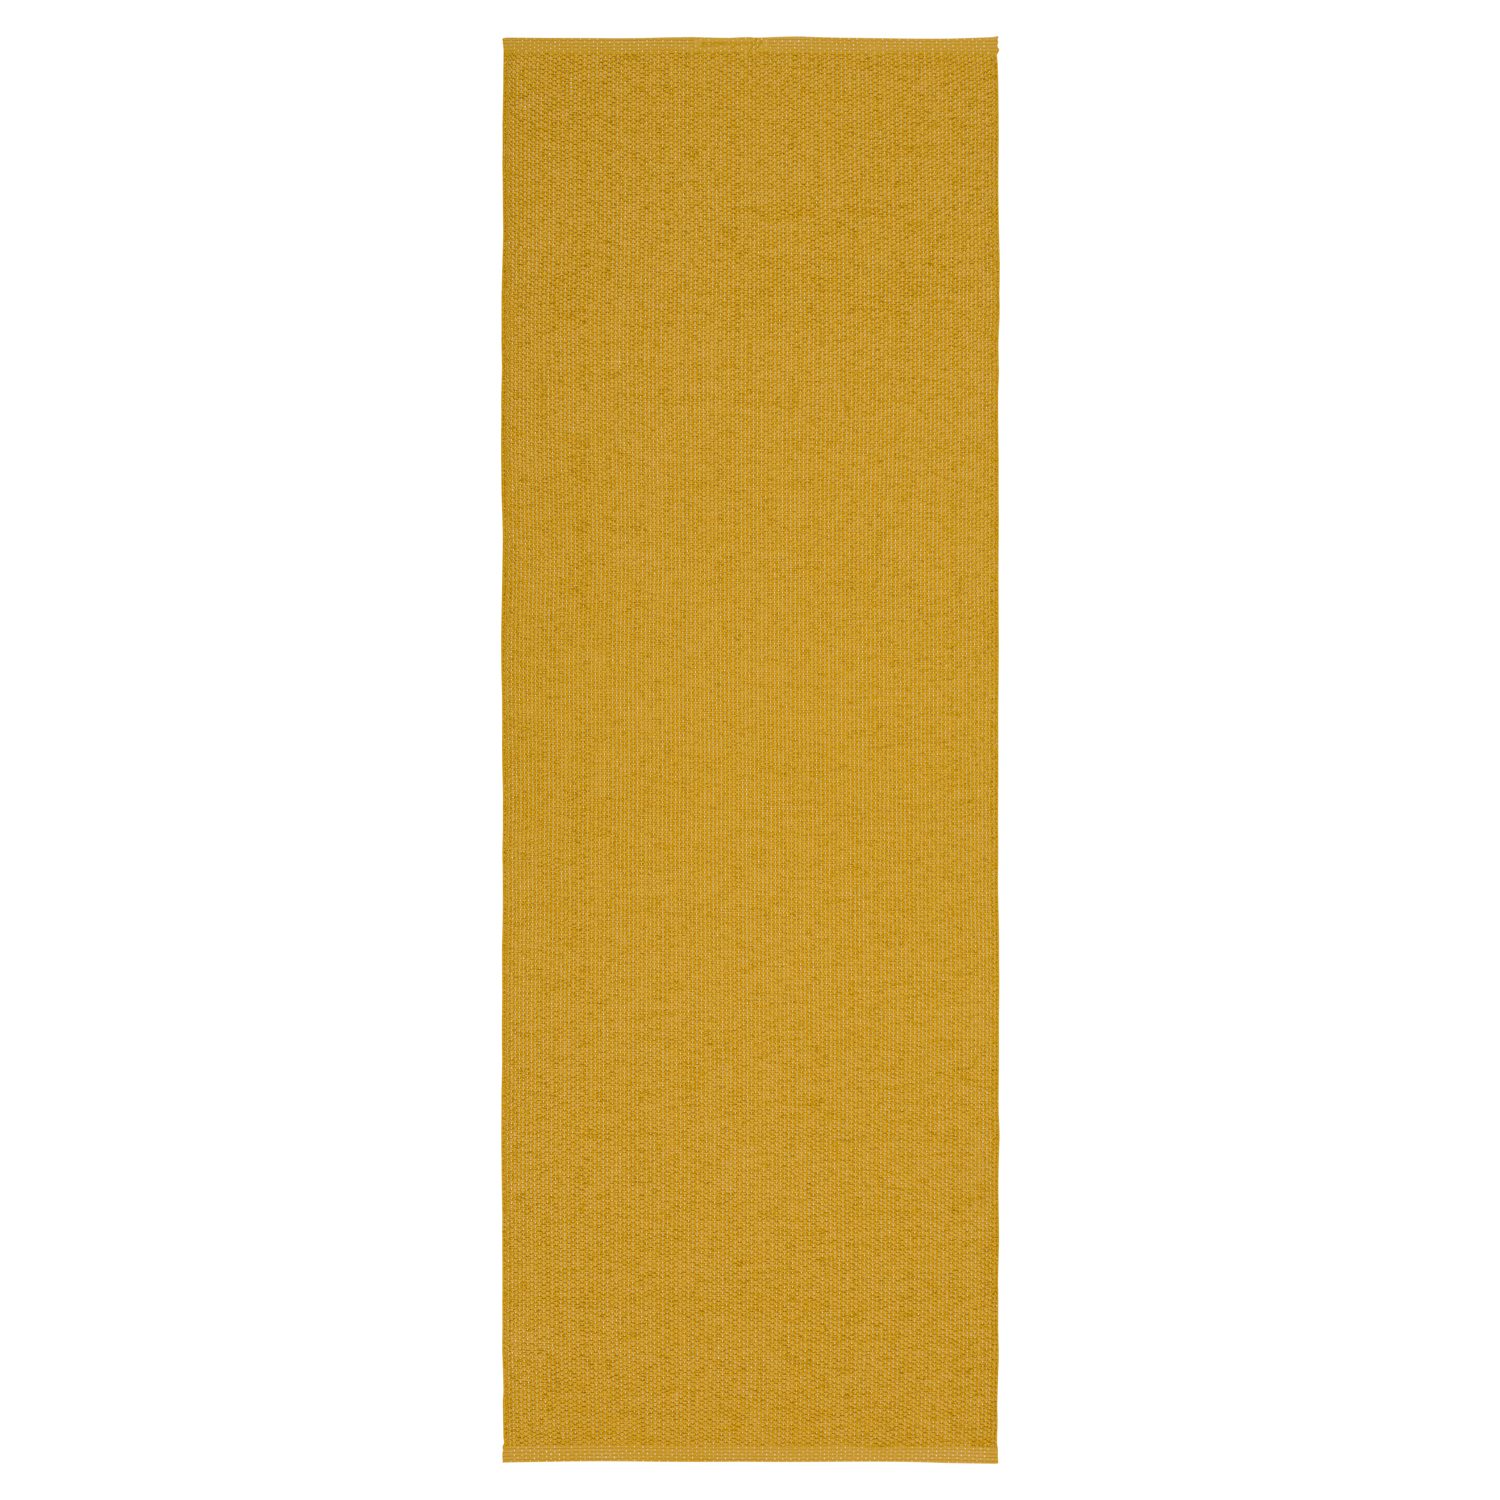 Horredsmattan Teppich Solo Mustard für Innen und Aussen Made in Sweden since 1956 UV-Beständig